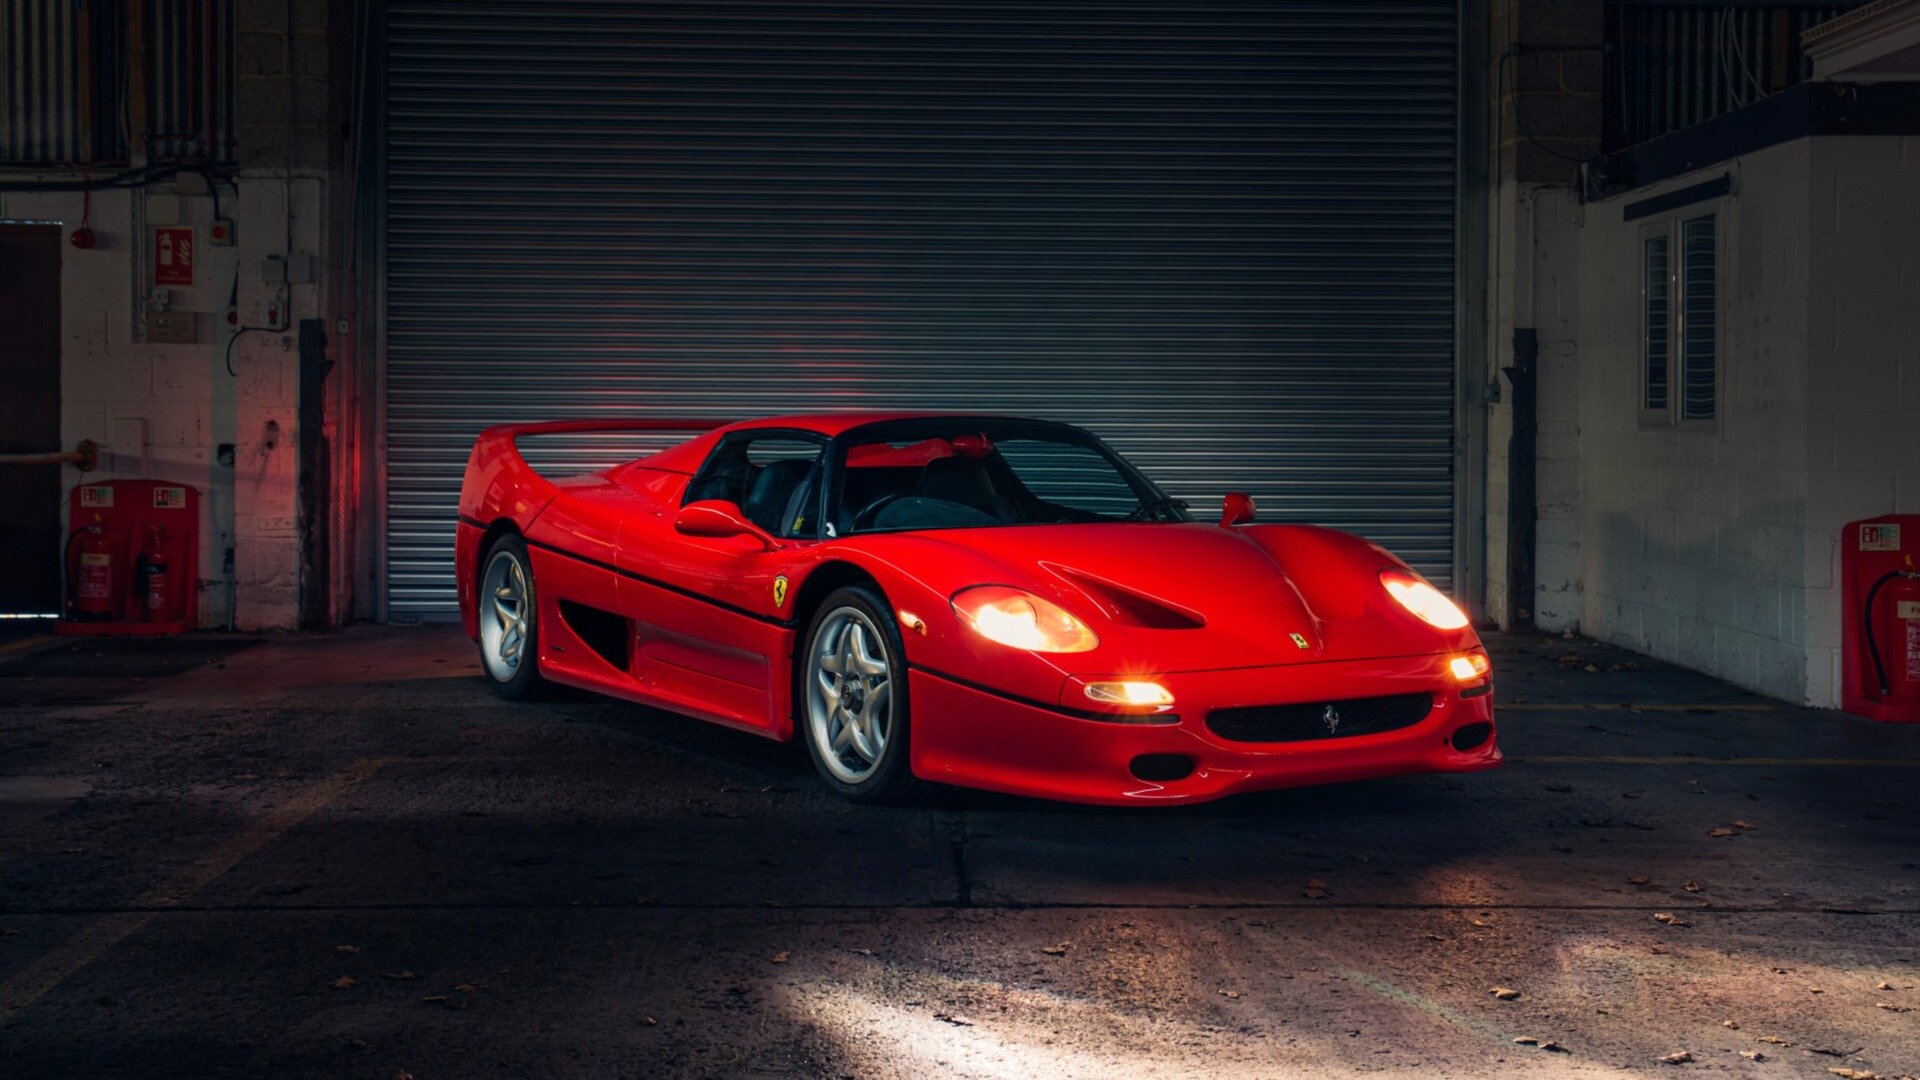 Редчайший праворульный Ferrari F50 выставят на аукцион